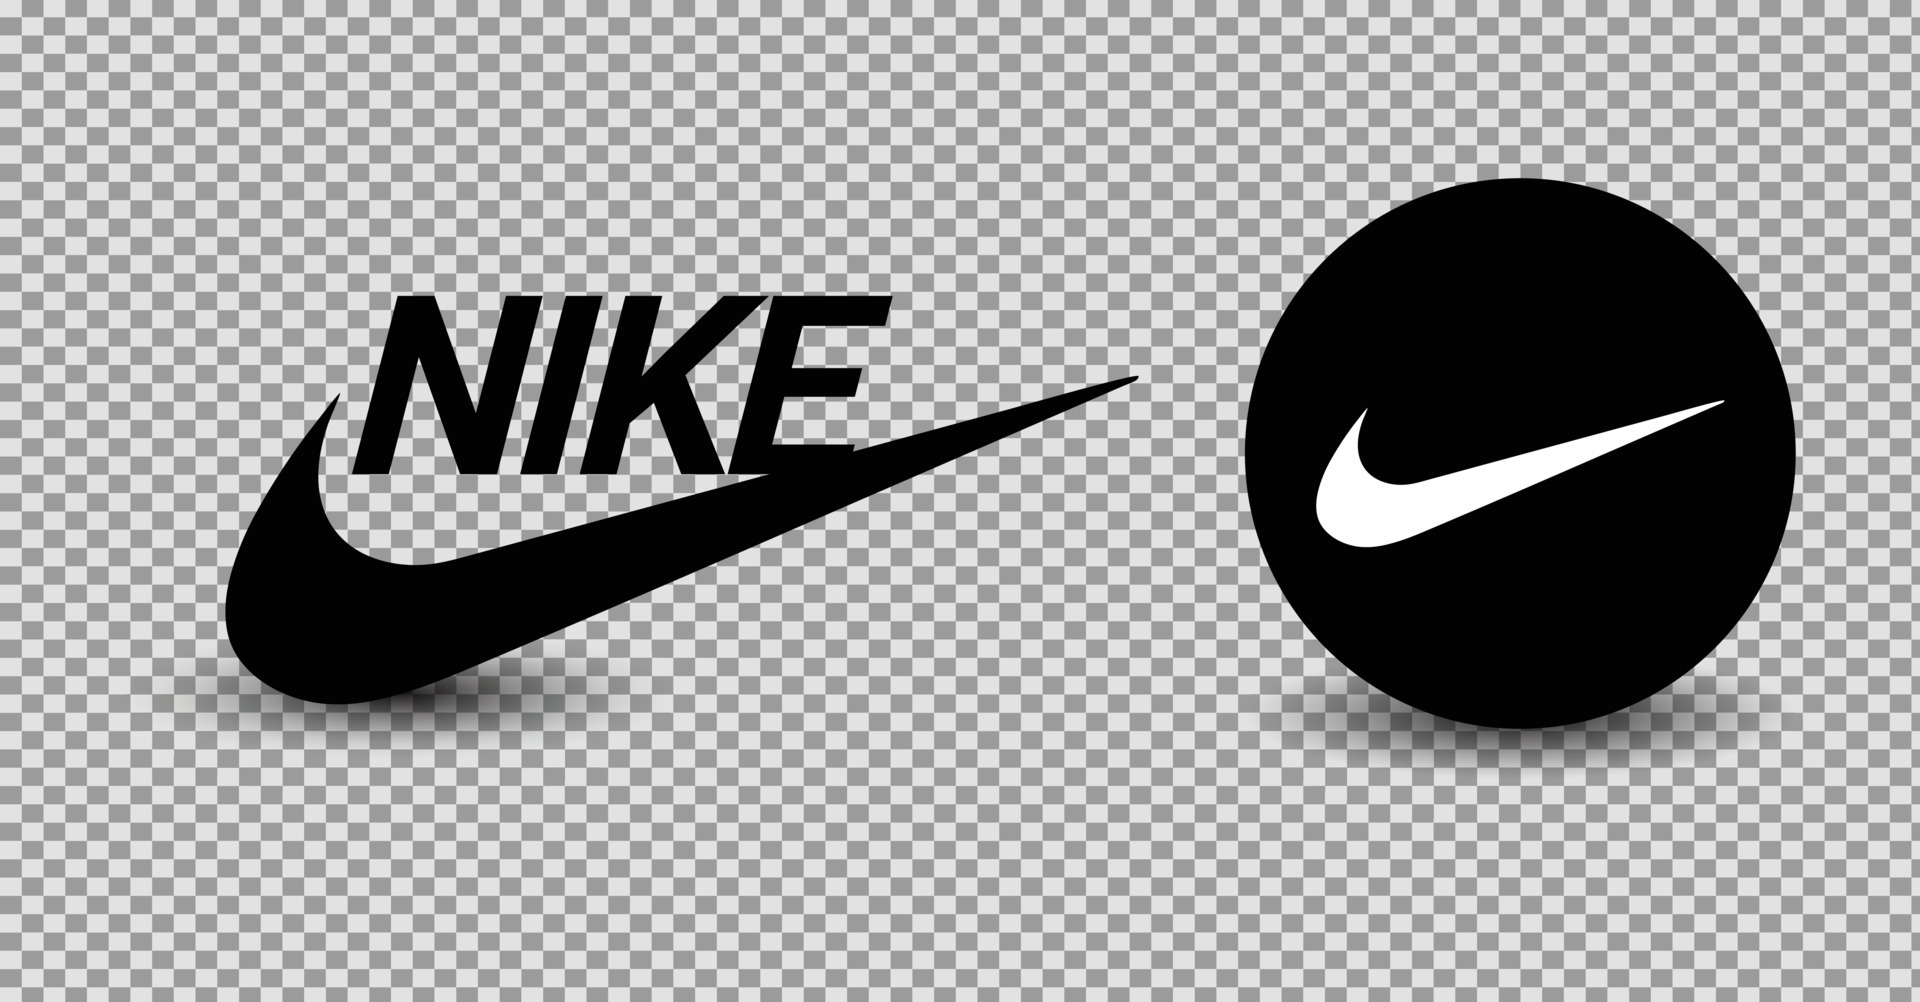 Nike logo vector on white background 6656880 Vector Art at Vecteezy